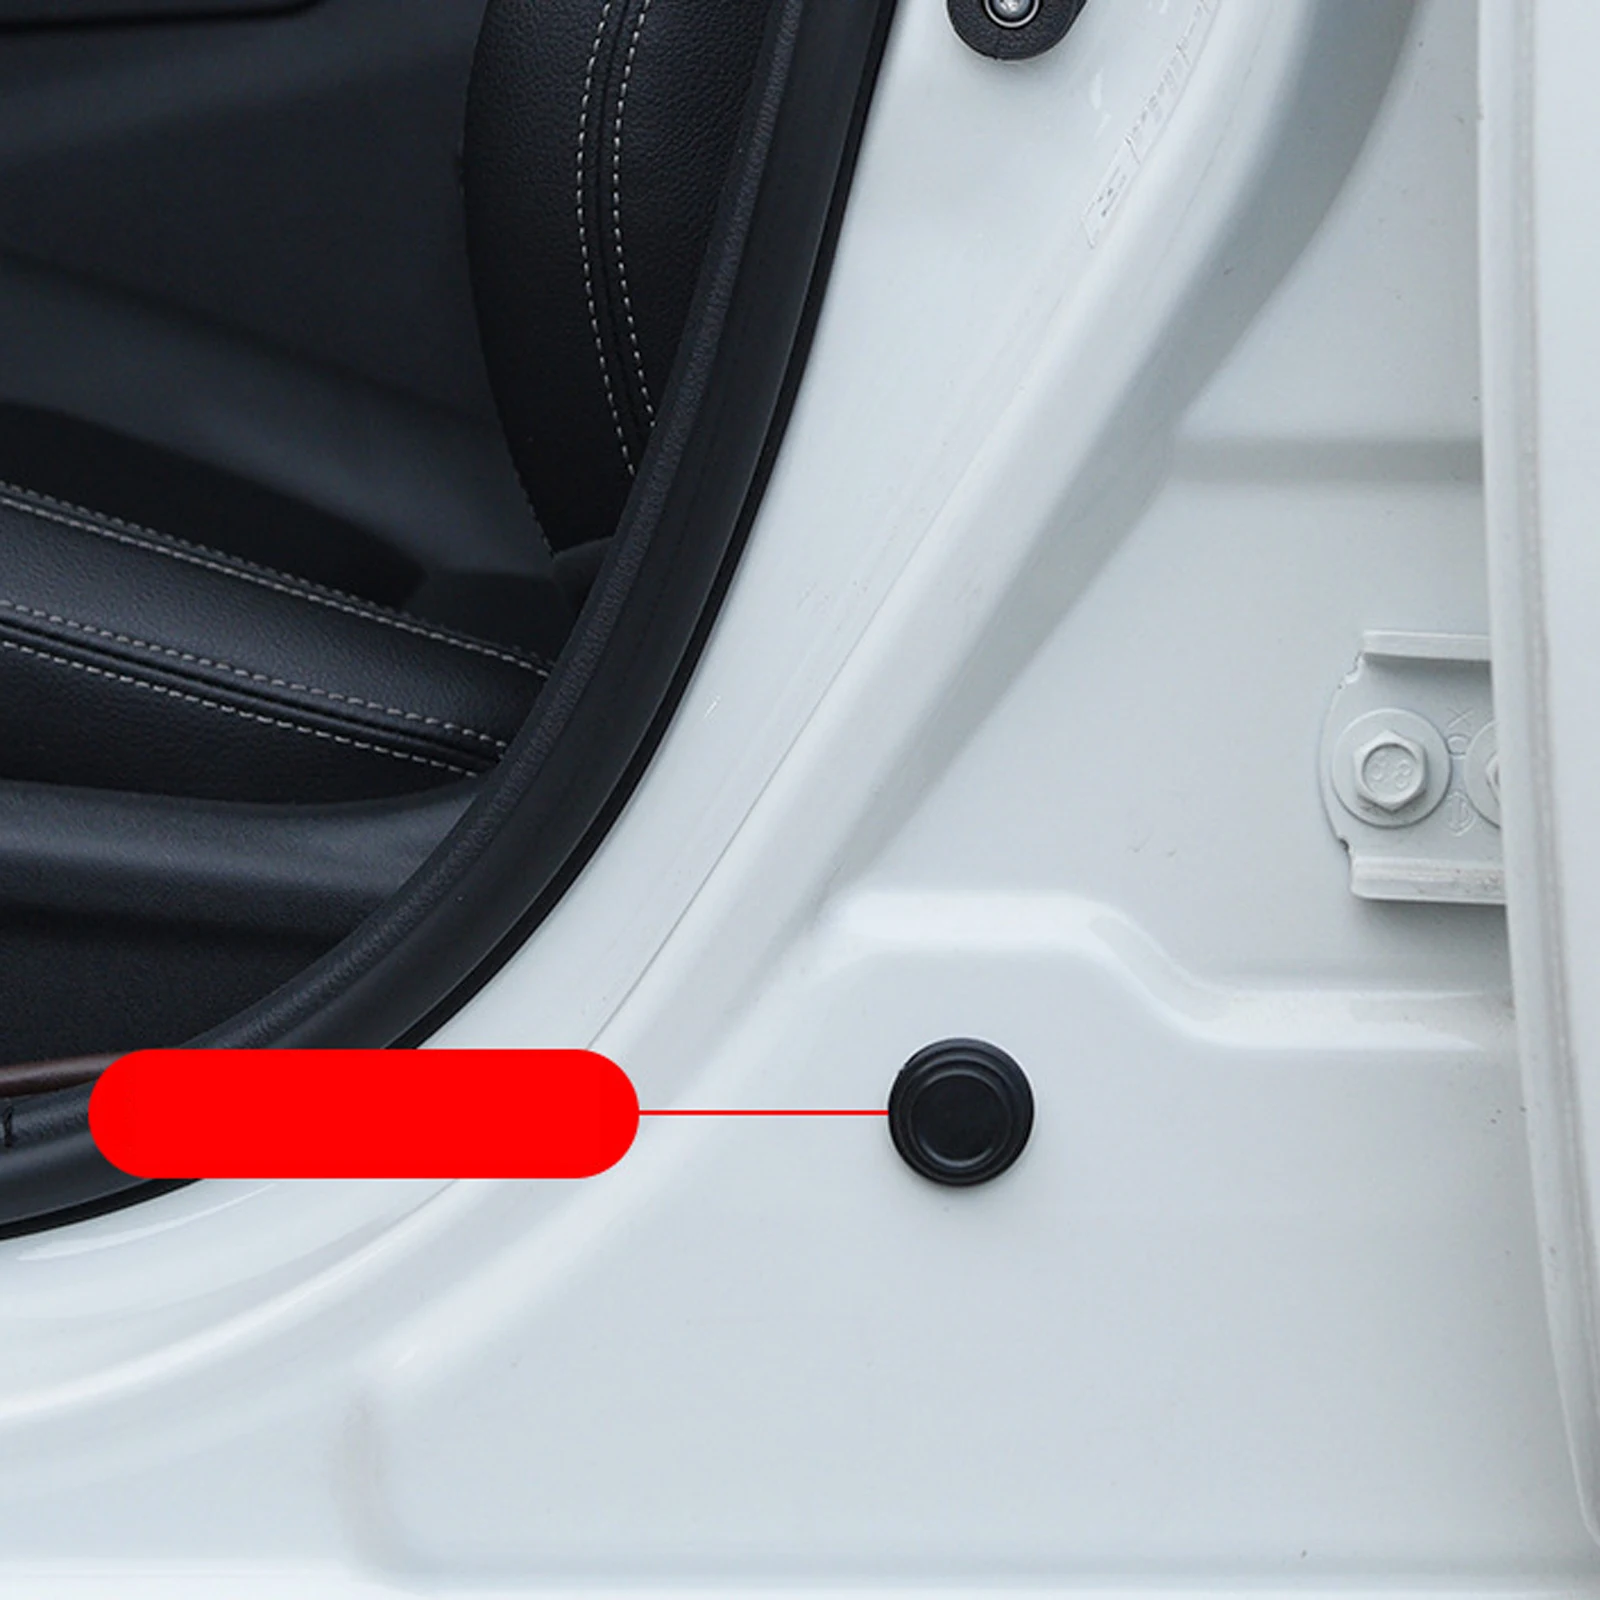 Anti-choque Silicone Car Door Pads, Fechando Shock Pads, Trunk Hood Sticker, Acessórios Interior do Carro, 20pcs